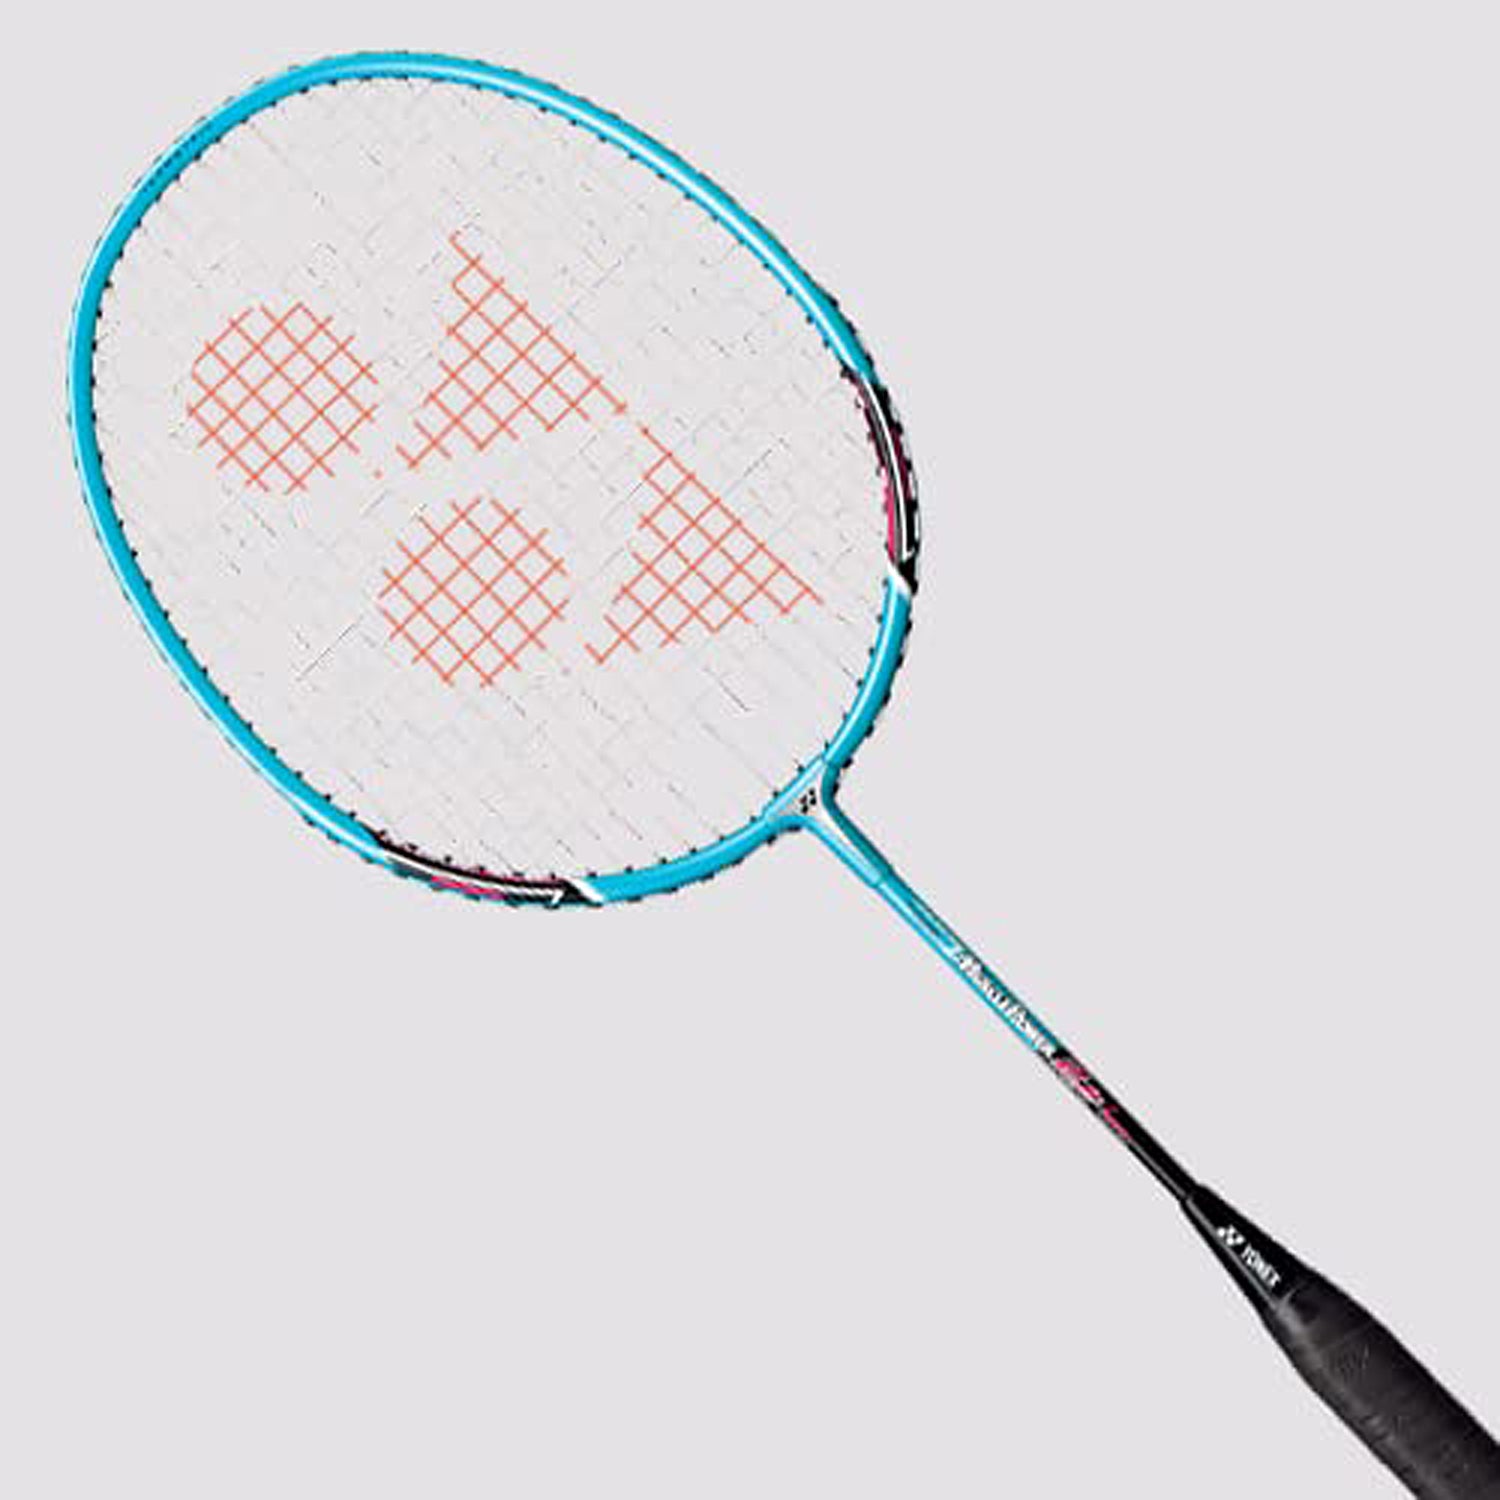 Yonex Muscle Power 2 Junior Strung Badminton Racquet, 4U5 - Light Blue - Best Price online Prokicksports.com